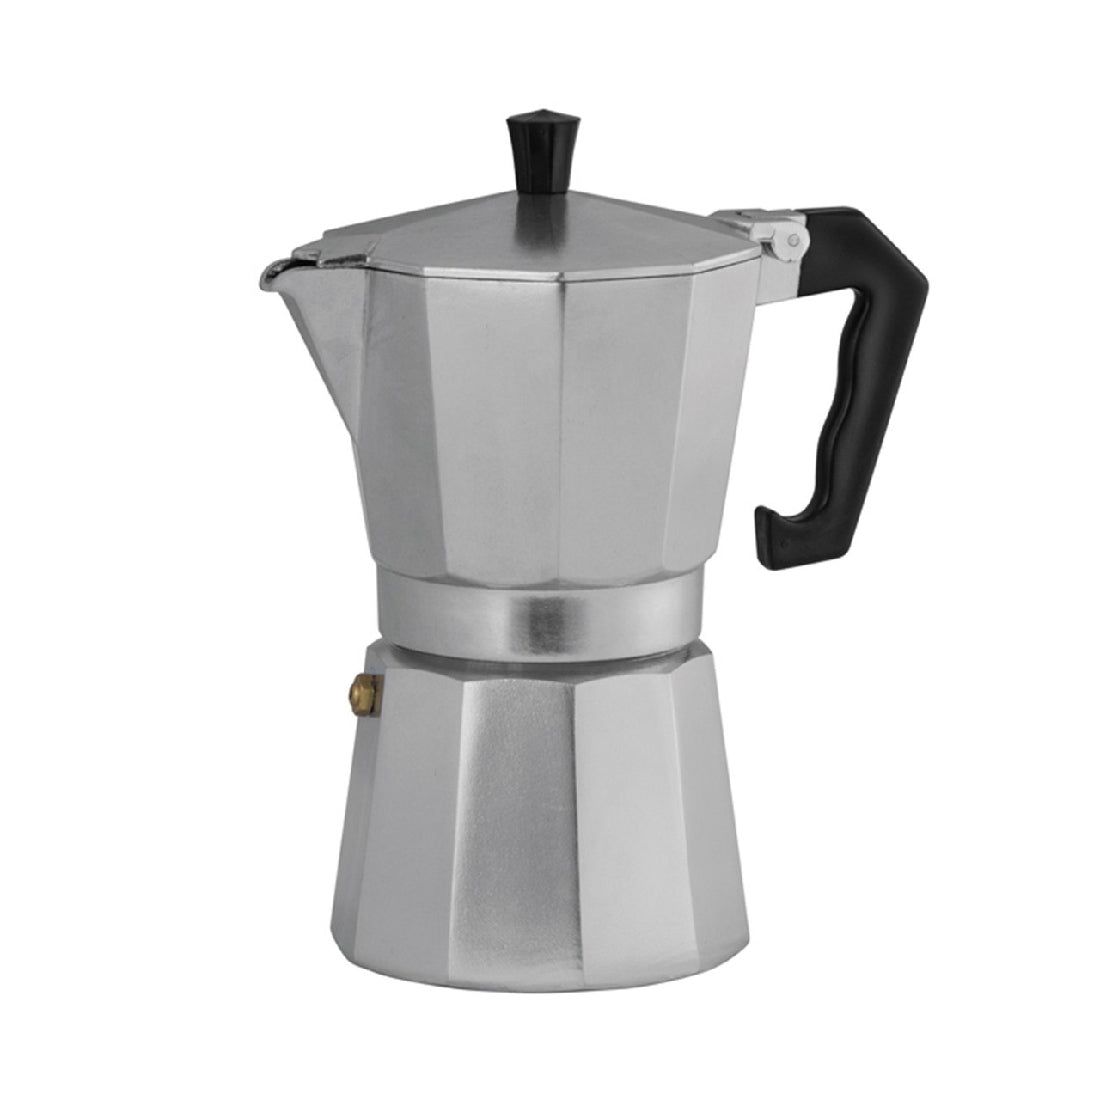 Avanti Classic Pro 6cup/300ml Espresso Coffee Maker